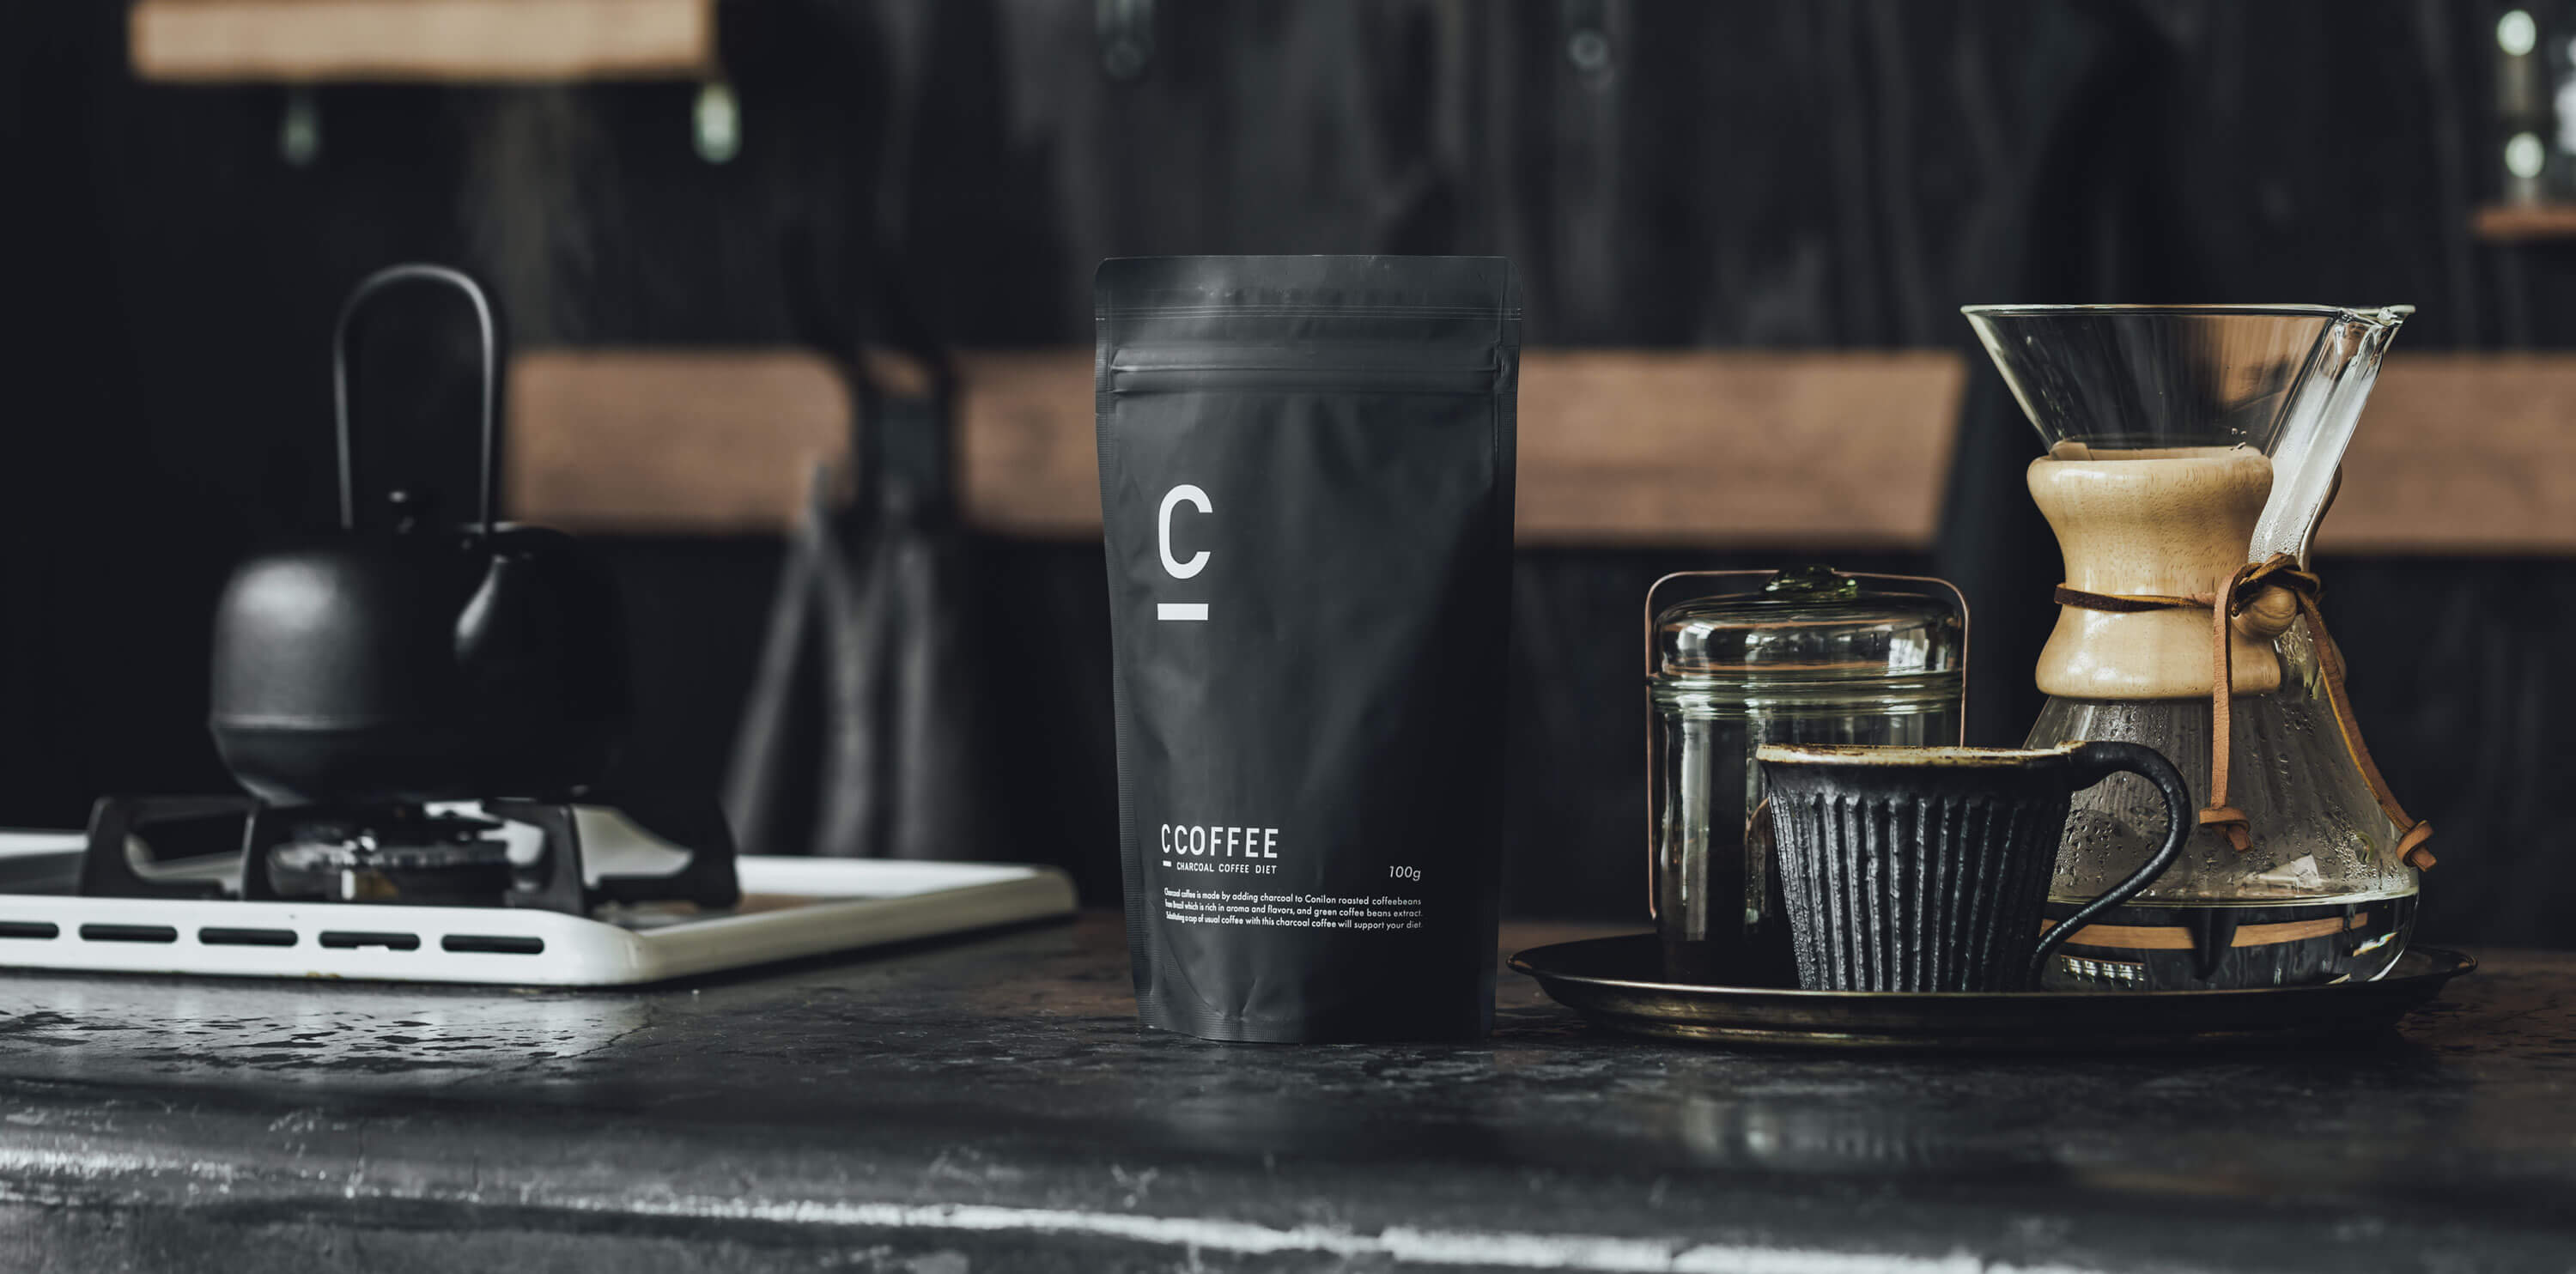 C COFFEE  チャコールコーヒー ダイエット 2点セット